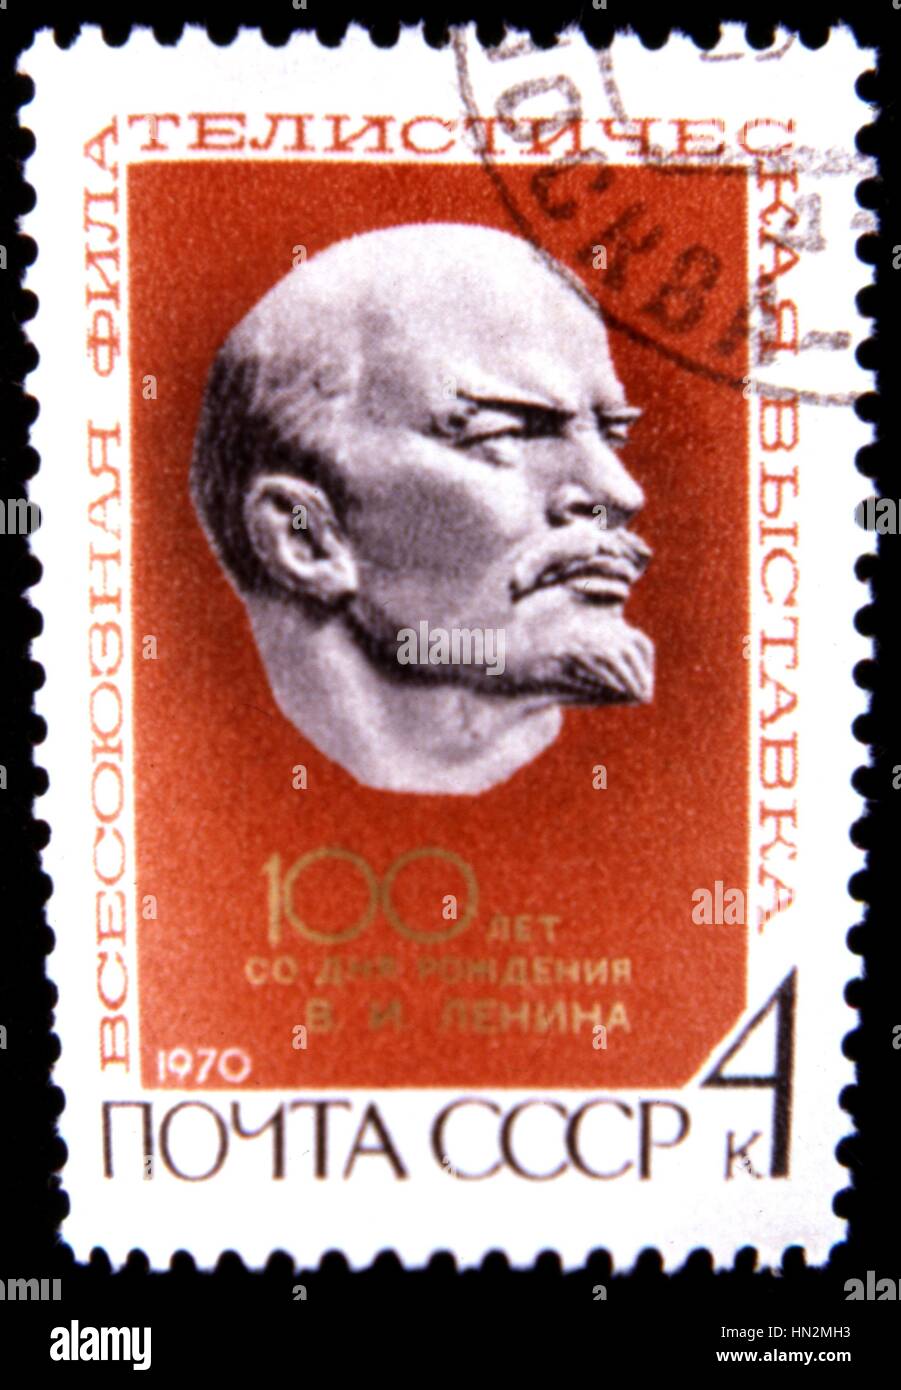 Timbre russe : commémoration du 100e anniversaire de naissance de Lénine, 1970 URSS Banque D'Images